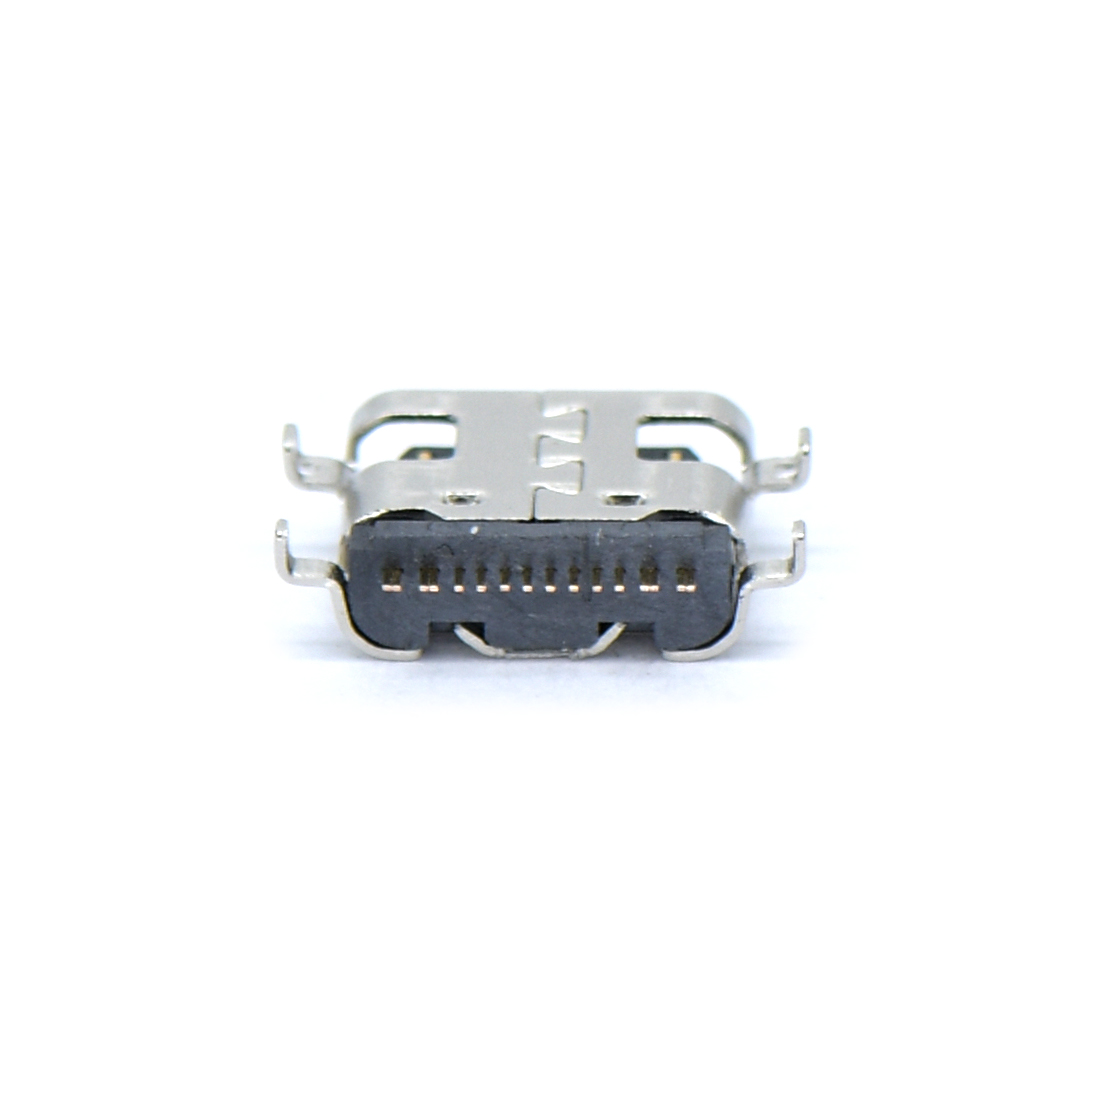 USB连接器Type-C 16P/F SMT 沉板式1.6mm 外壳四脚插板 L=6.5mm 无弹